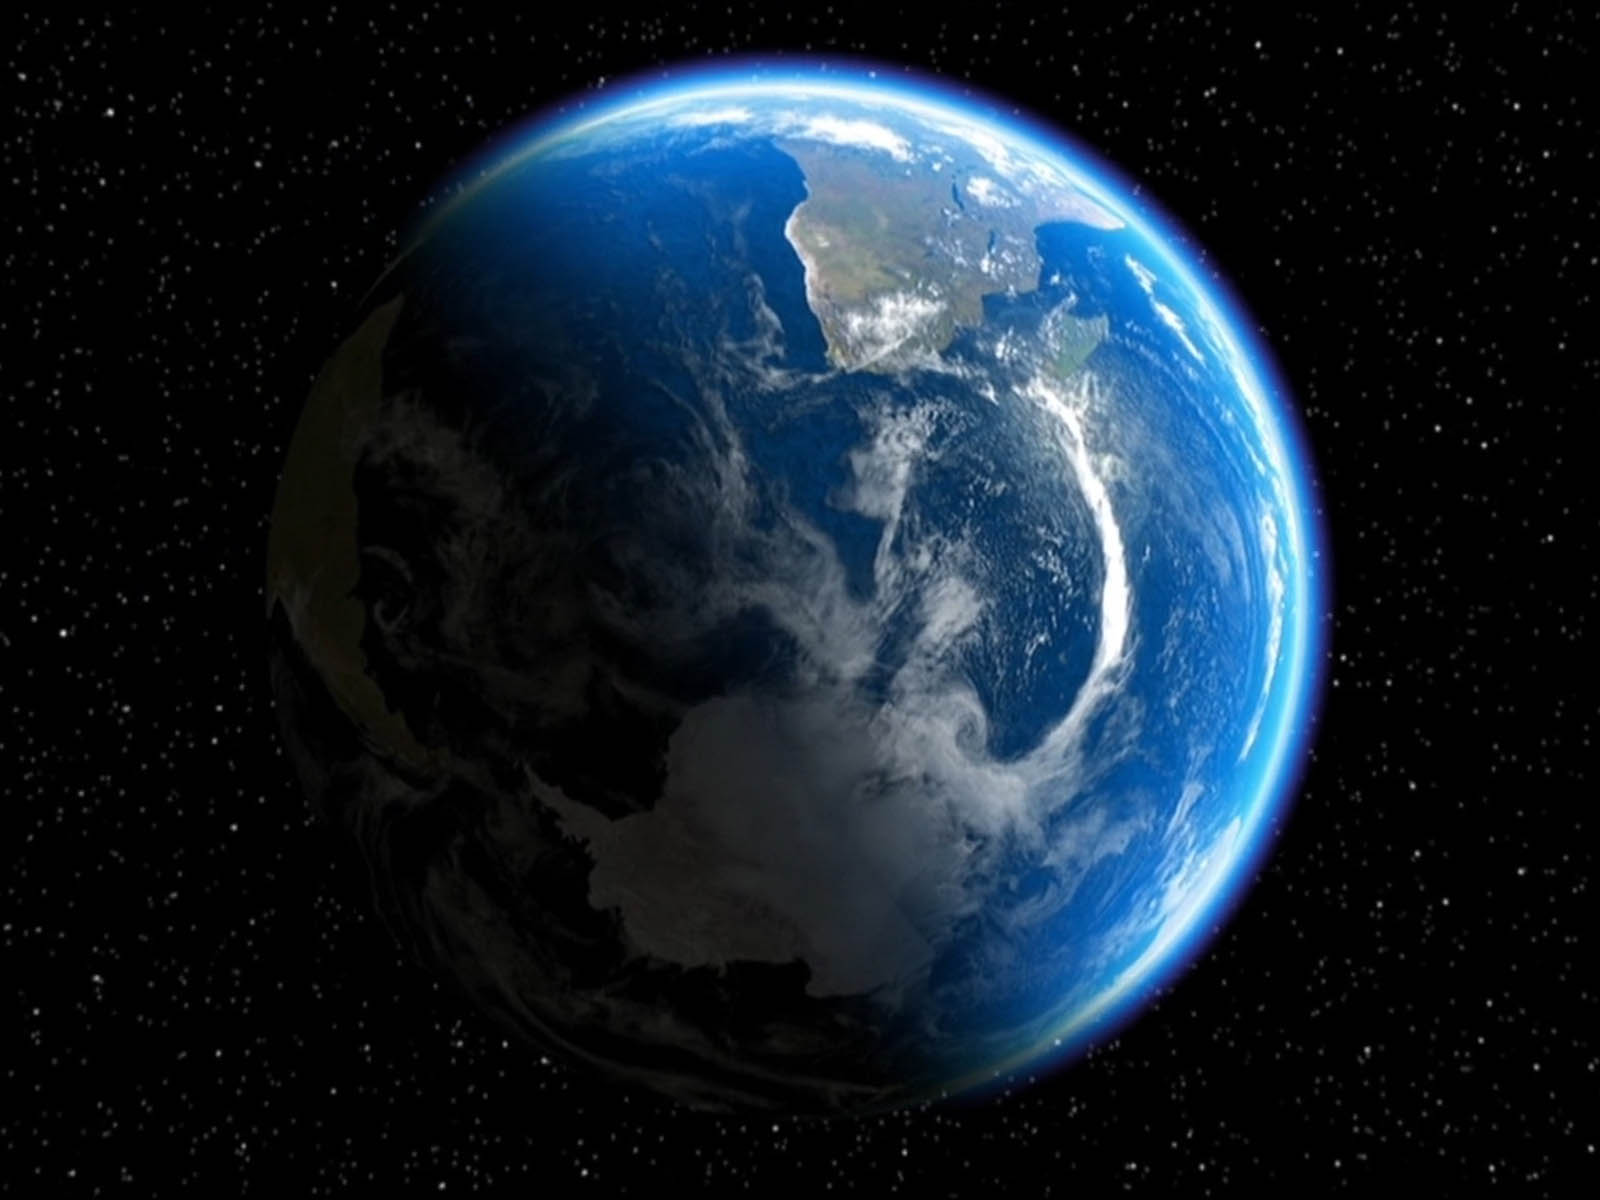 44+] Planet Earth Wallpapers for Desktop - WallpaperSafari